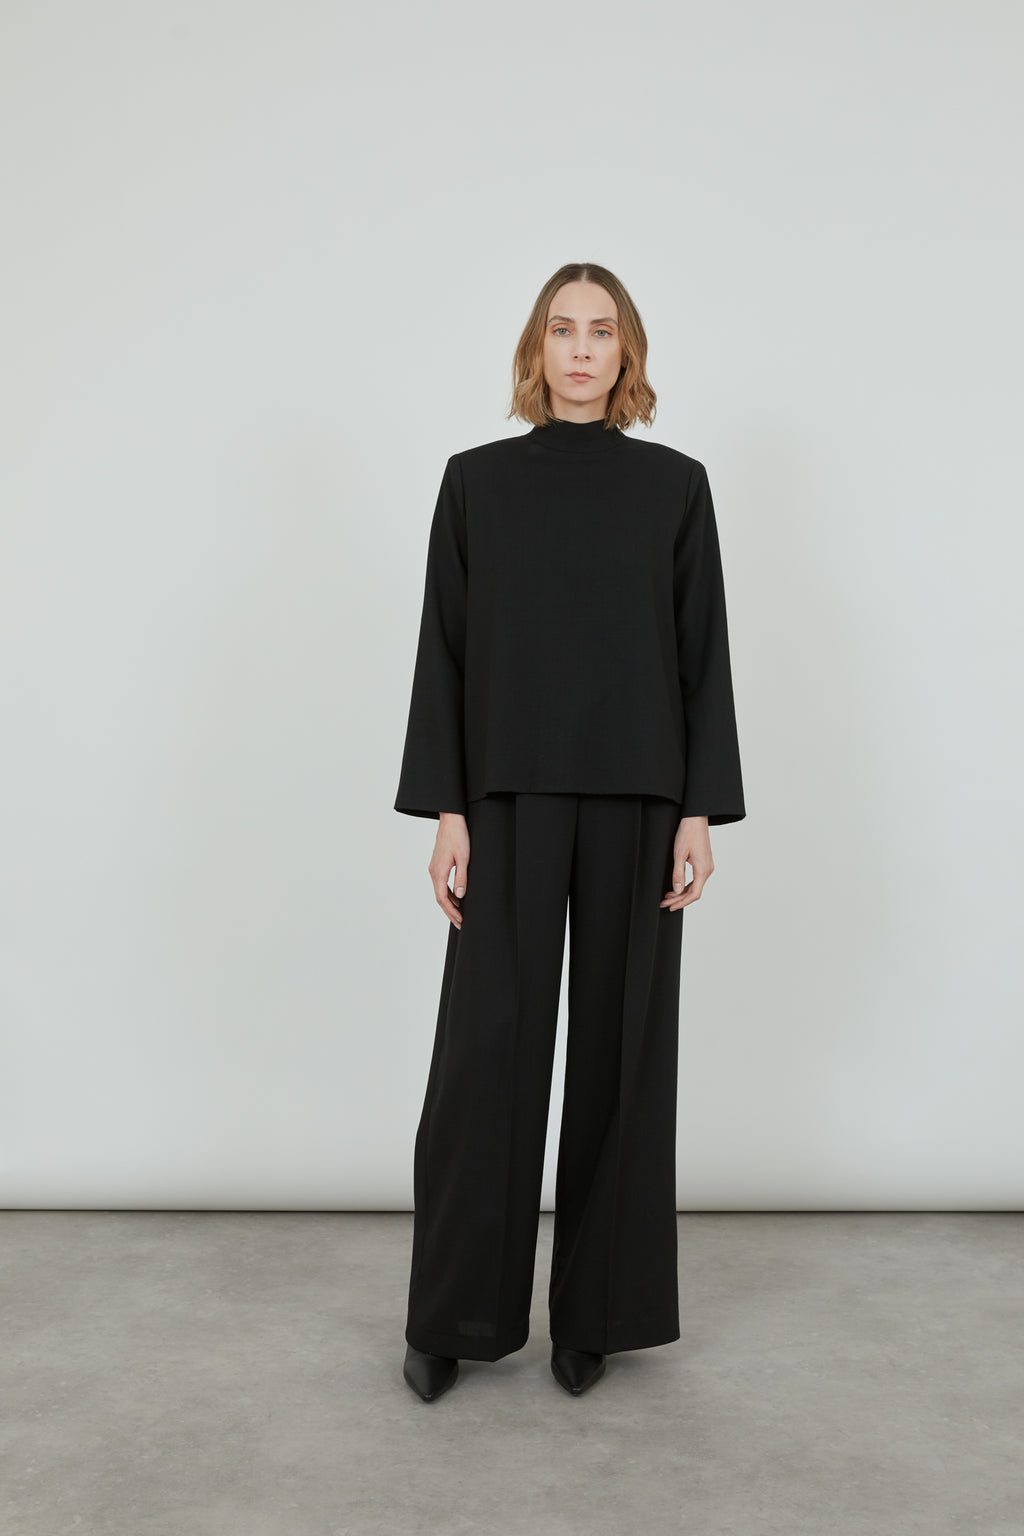 Jacoba blouse | Black - Virgin wool